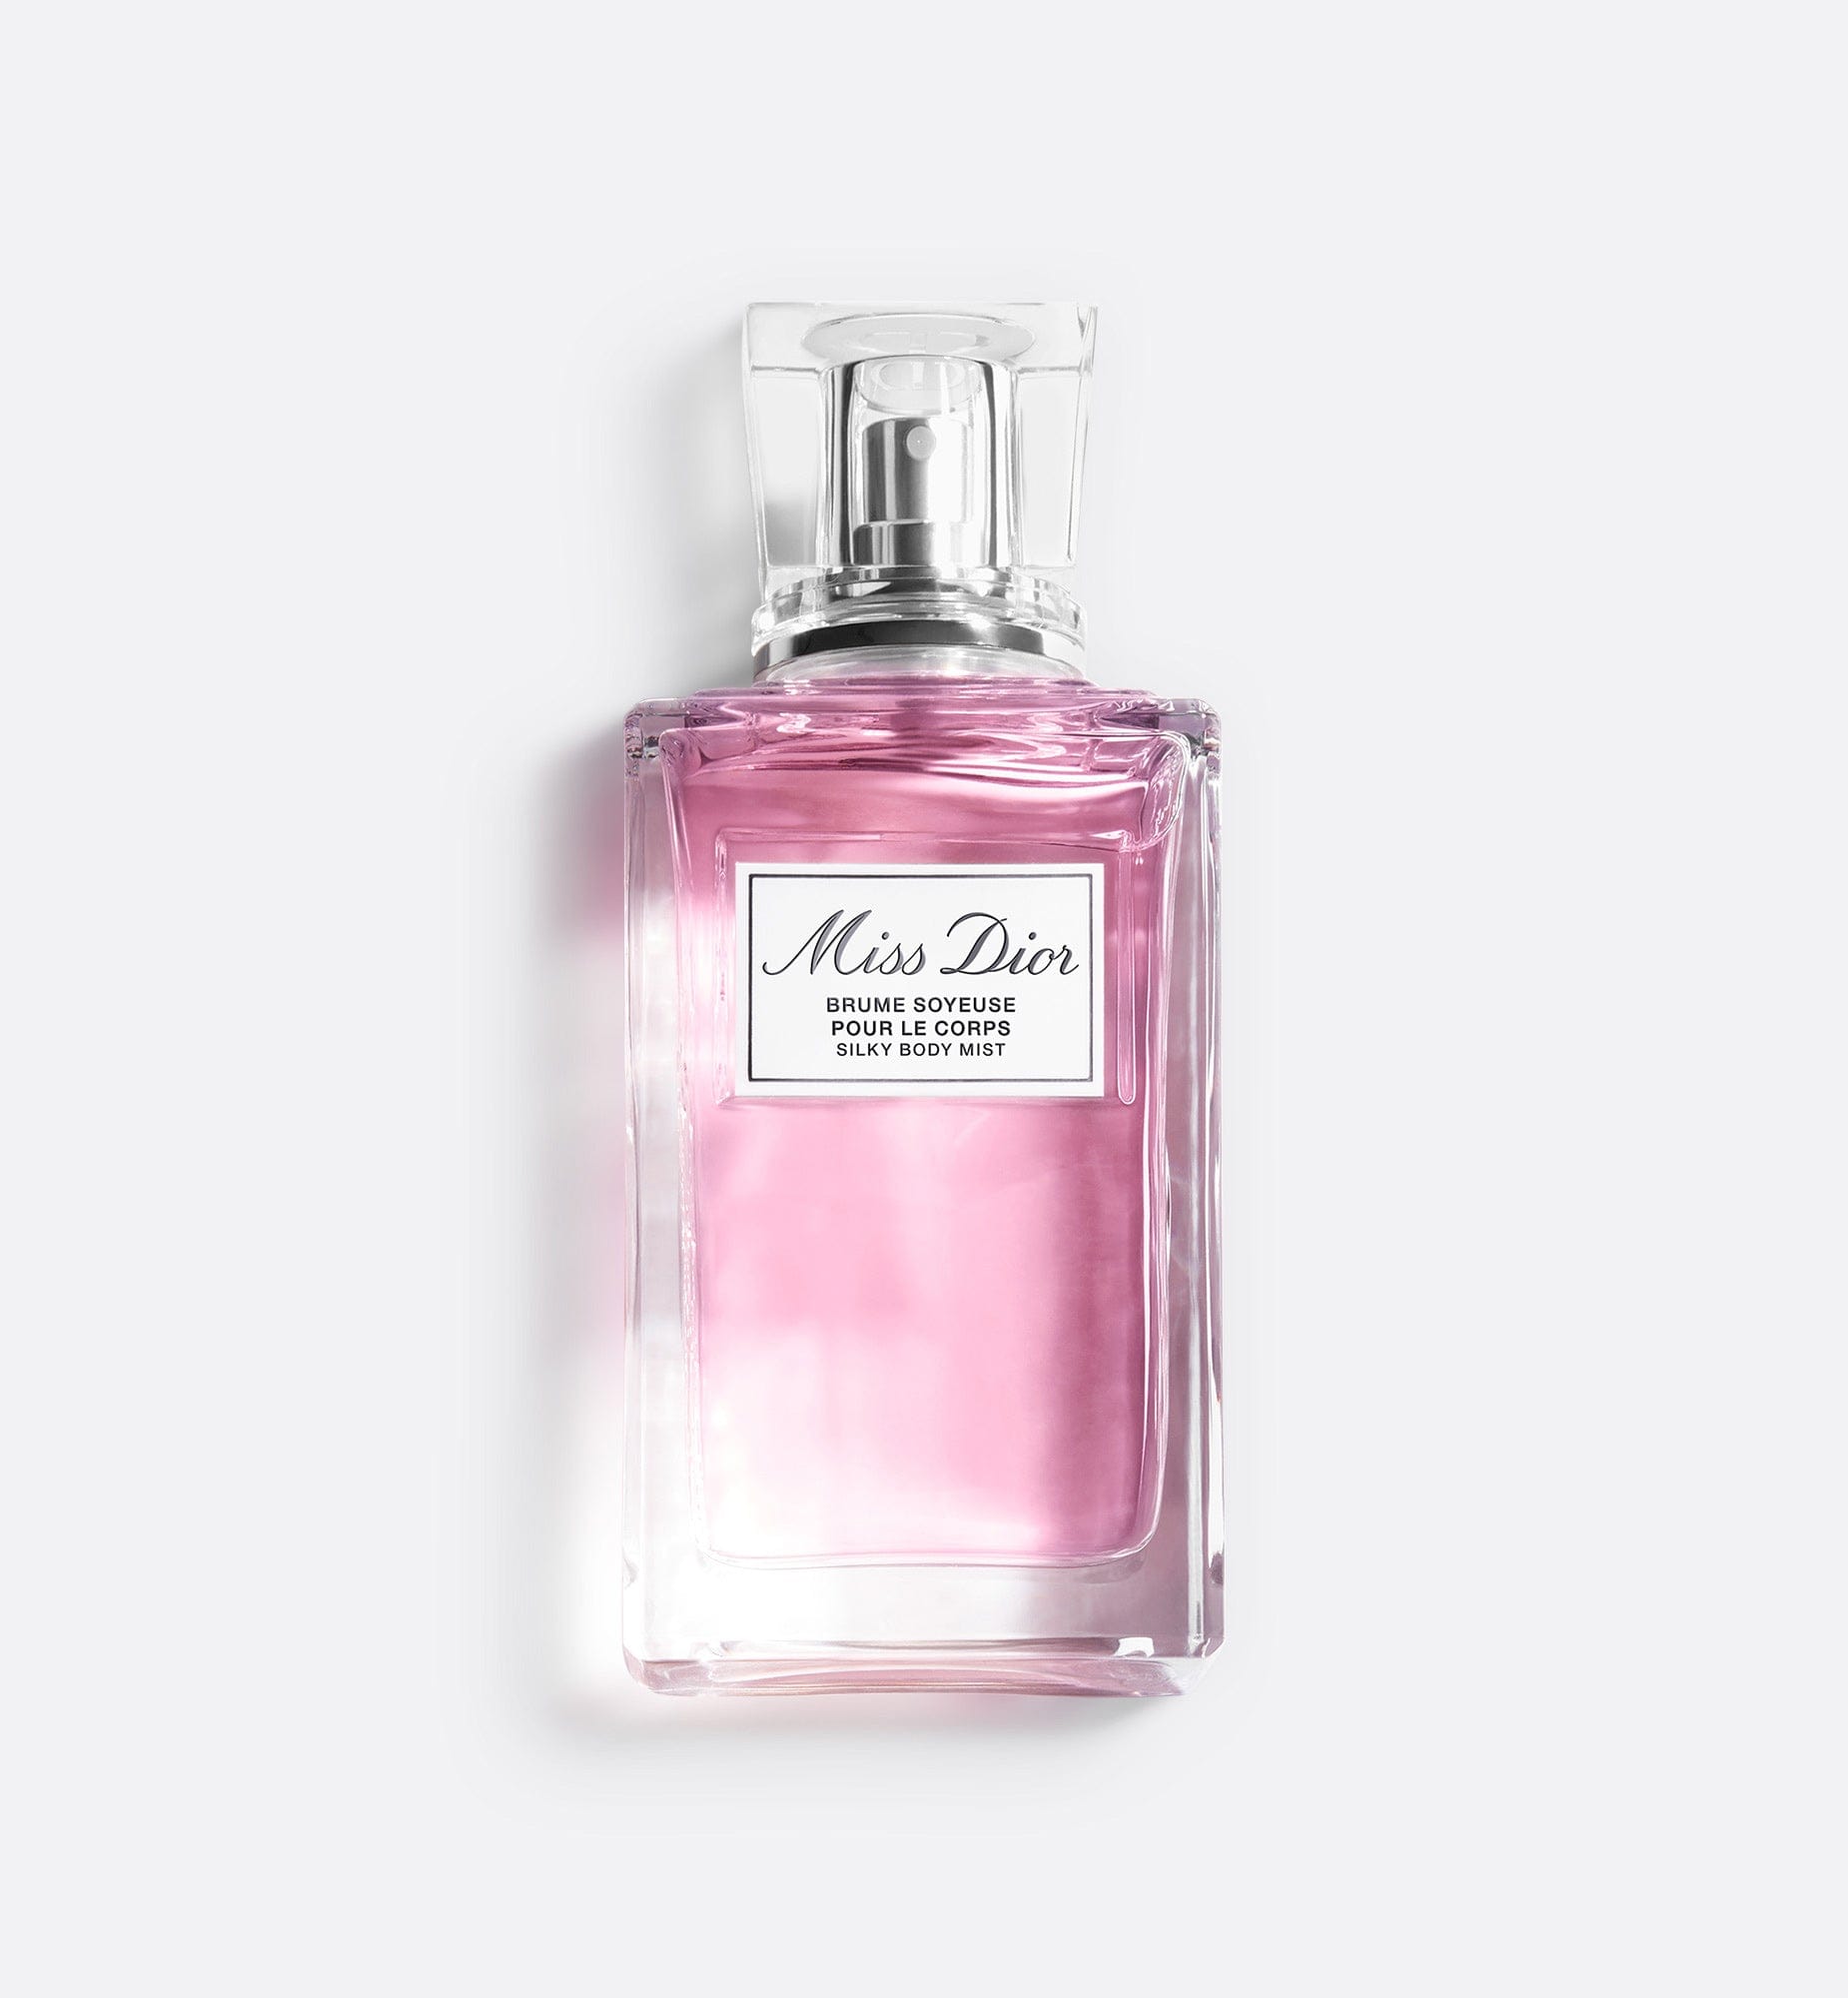 Miss Dior絲滑香體噴霧 | 不油膩的香體噴霧 - 潤澤肌膚